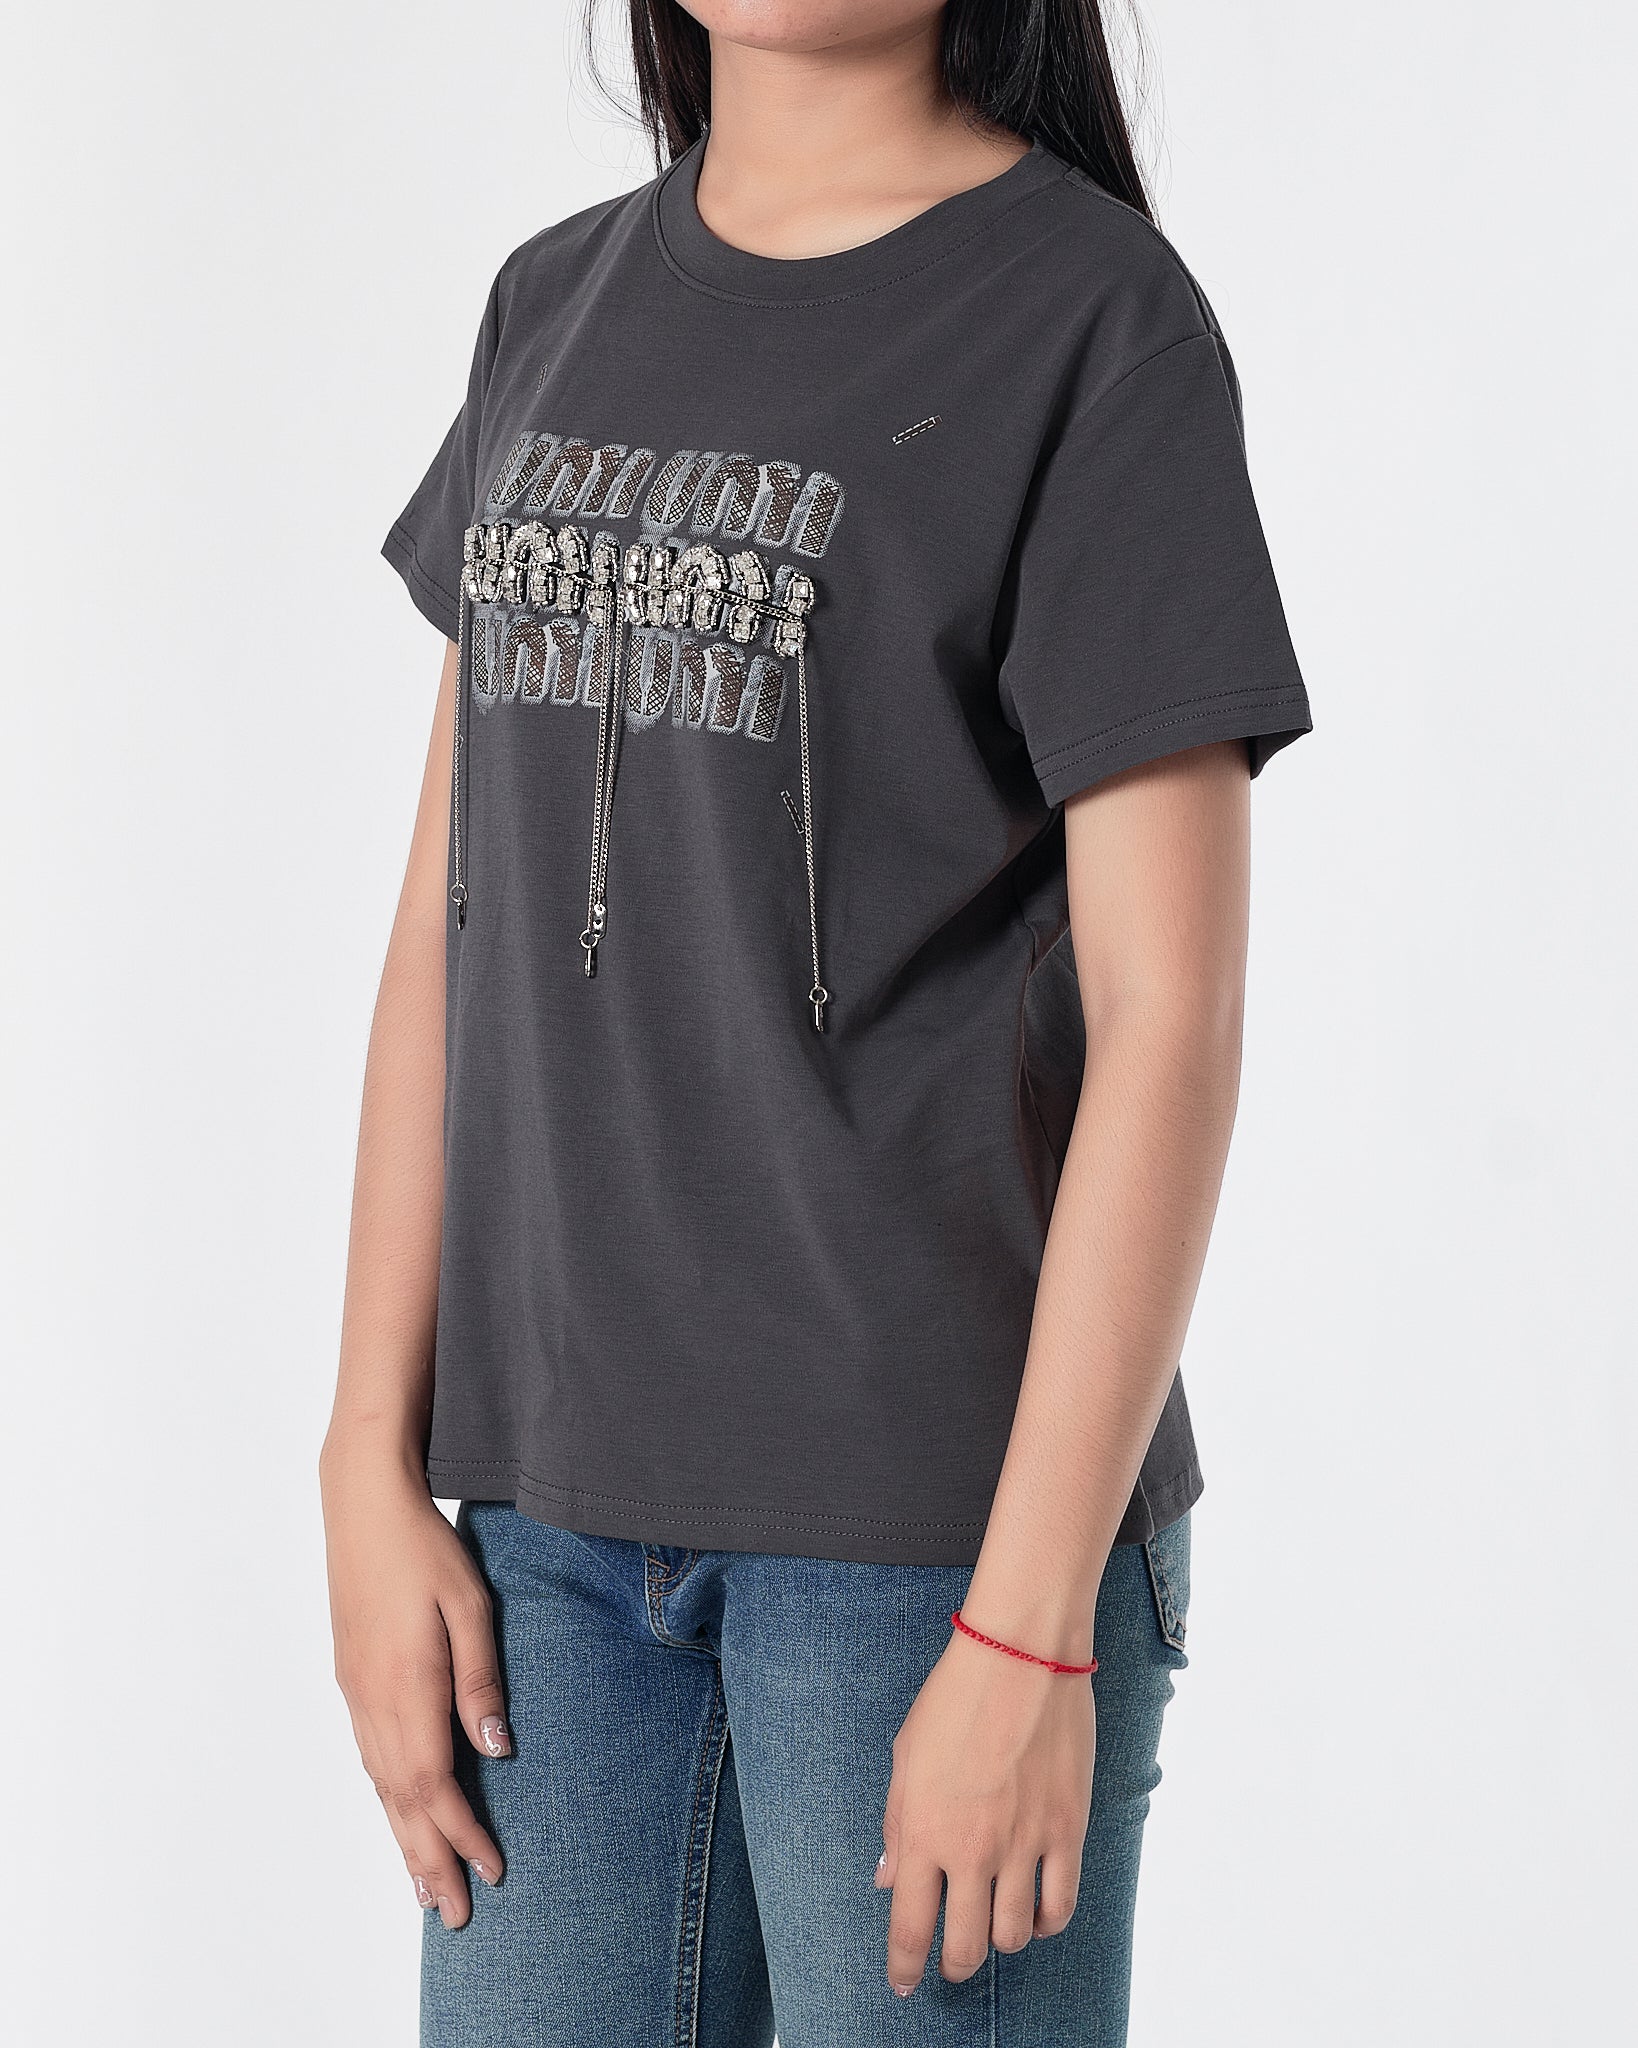 MIU Rhinestone Dripping Chain Lady Grey T-Shirt 28.90